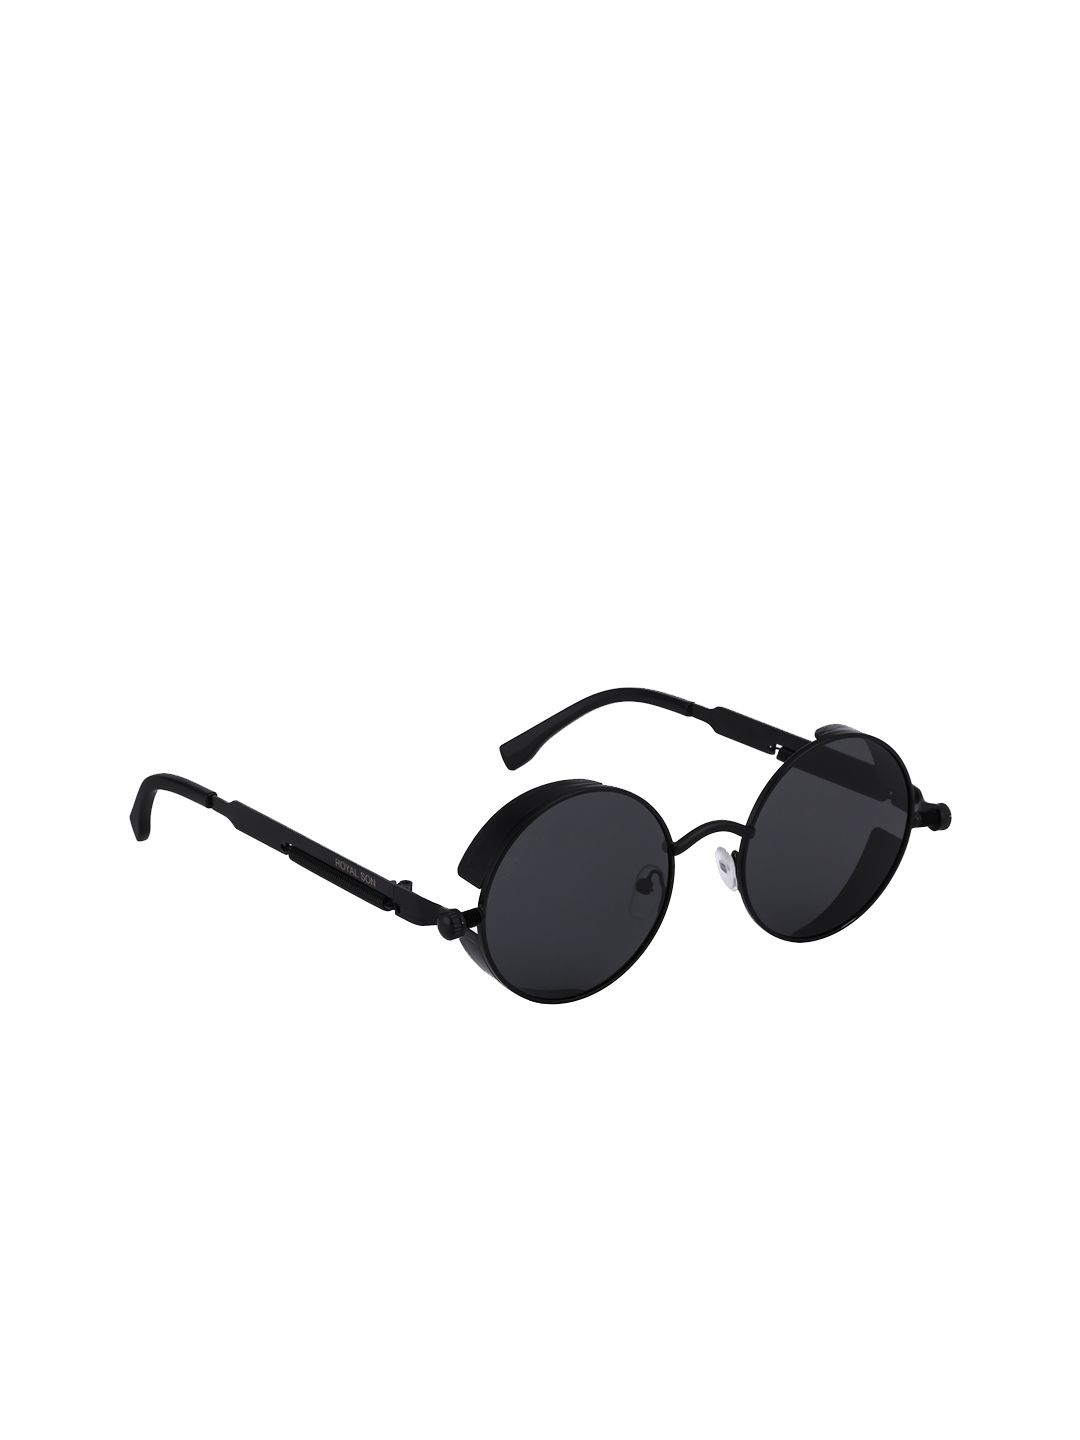 ROYAL SON Unisex Round Polarised & UV Protected Sunglasses CHI0084-C2 Price in India